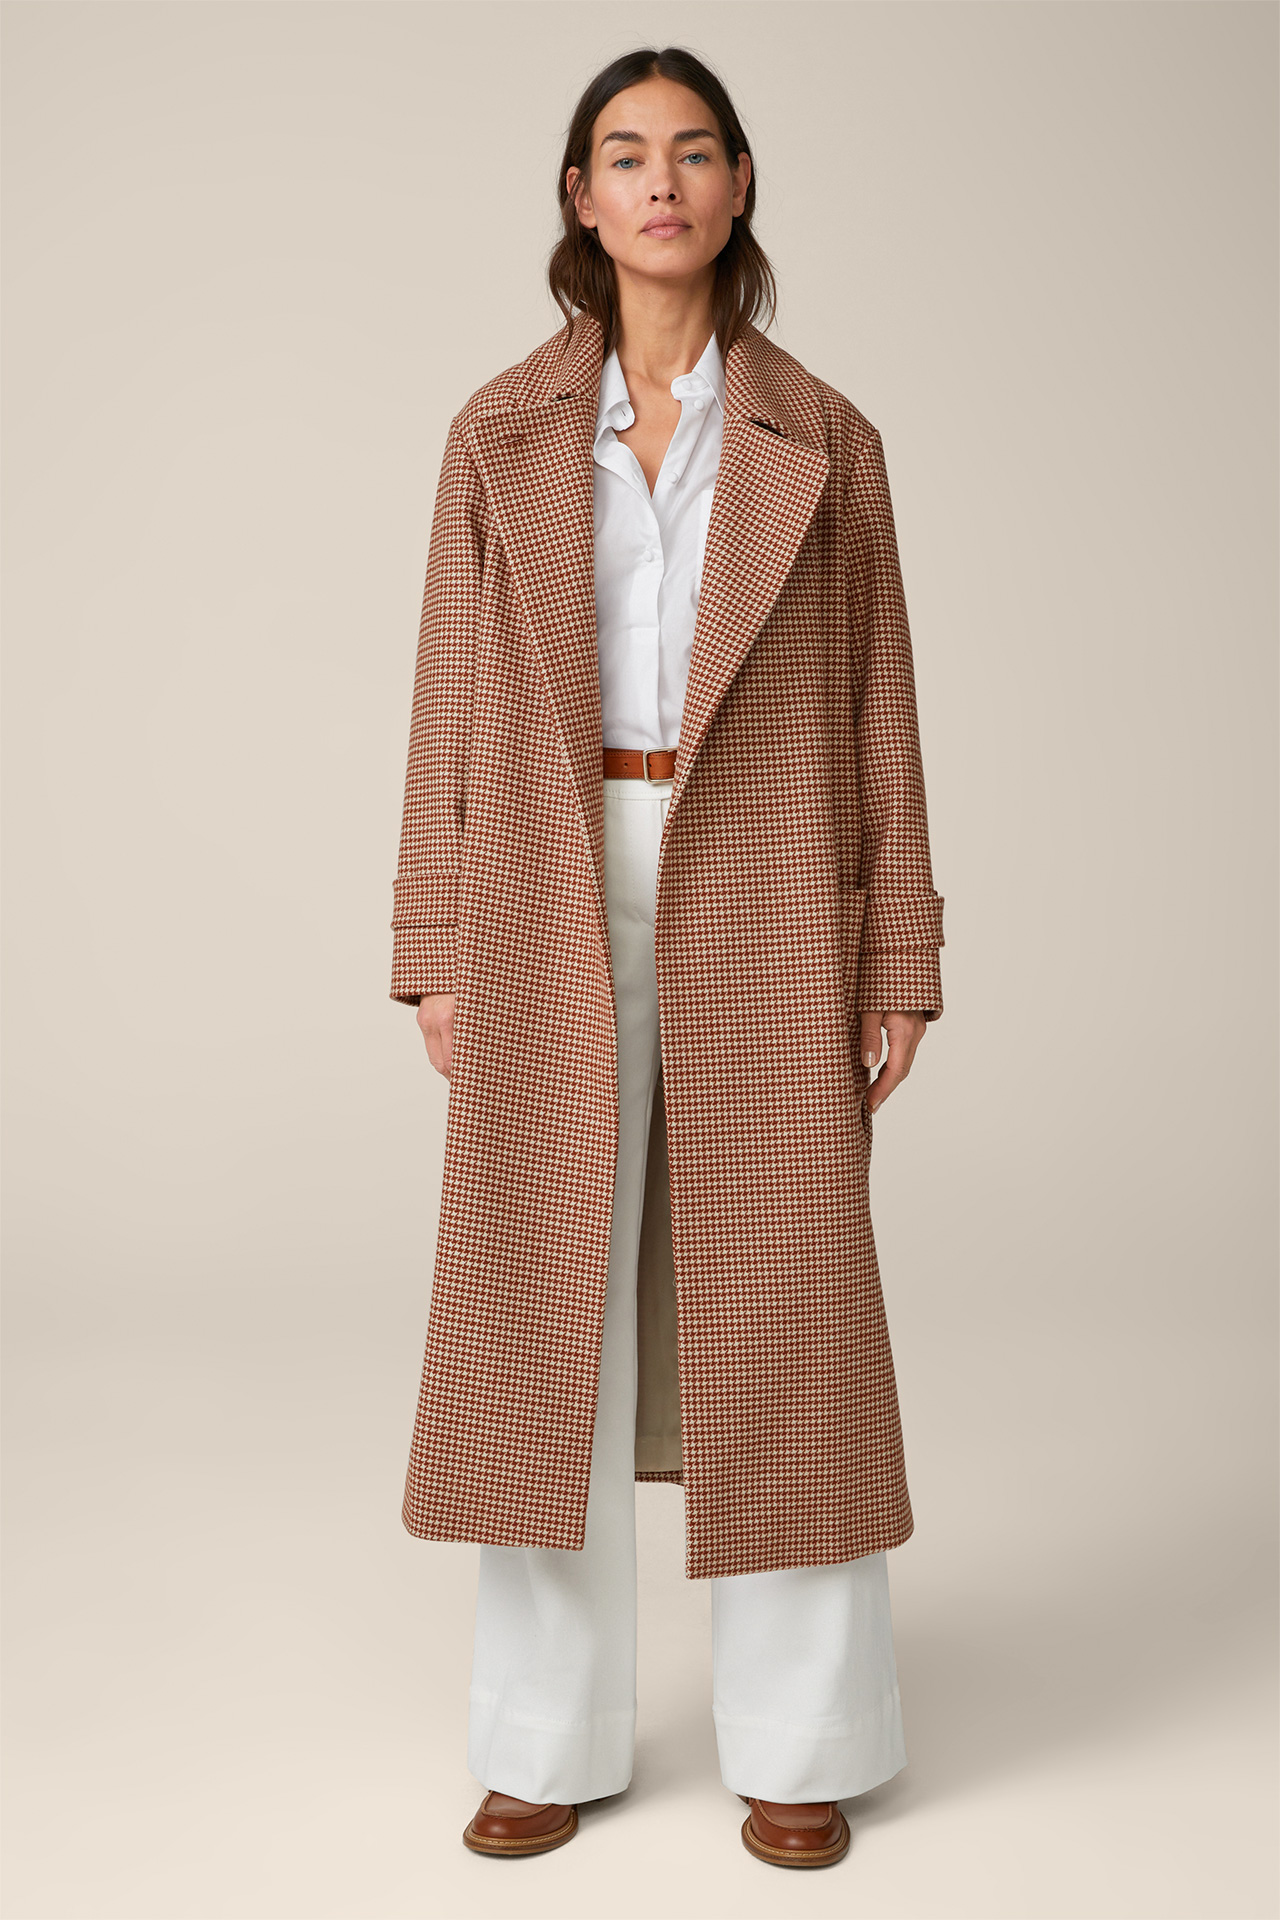 Manteau long en laine vierge, couleur cuivre-écru à motif